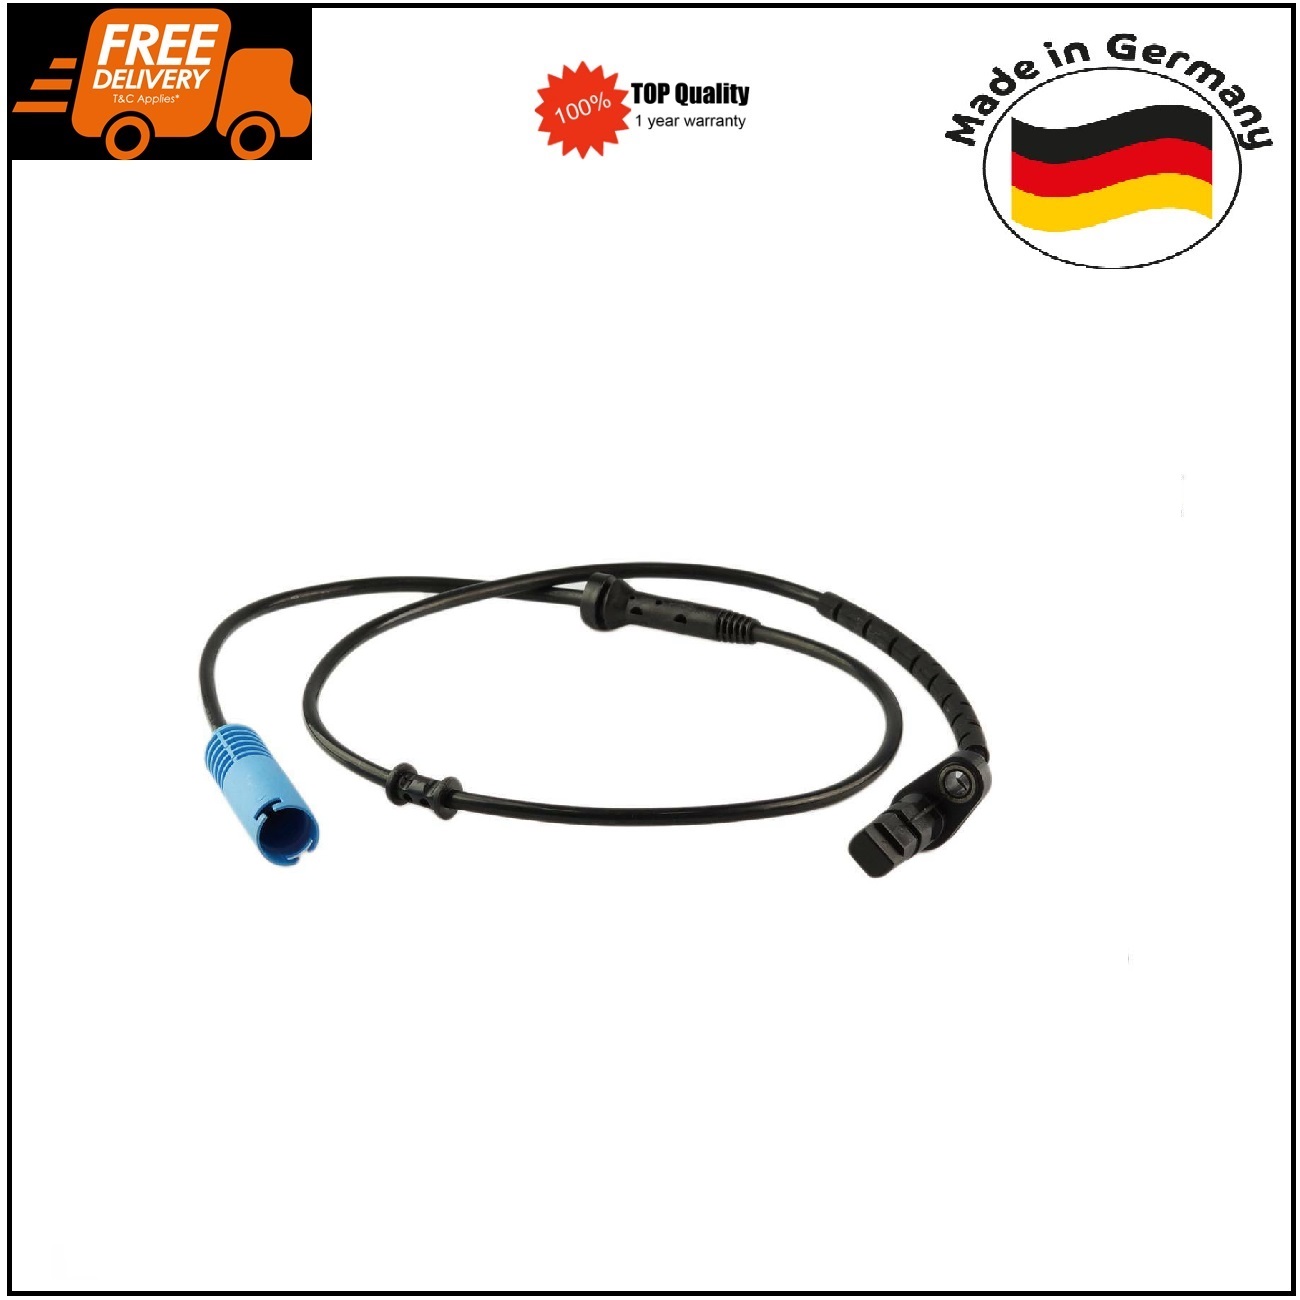 ABS Wheel Speed Sensor Rear for BMW E38 E52 730i 740i 750i 34521165533 German Made